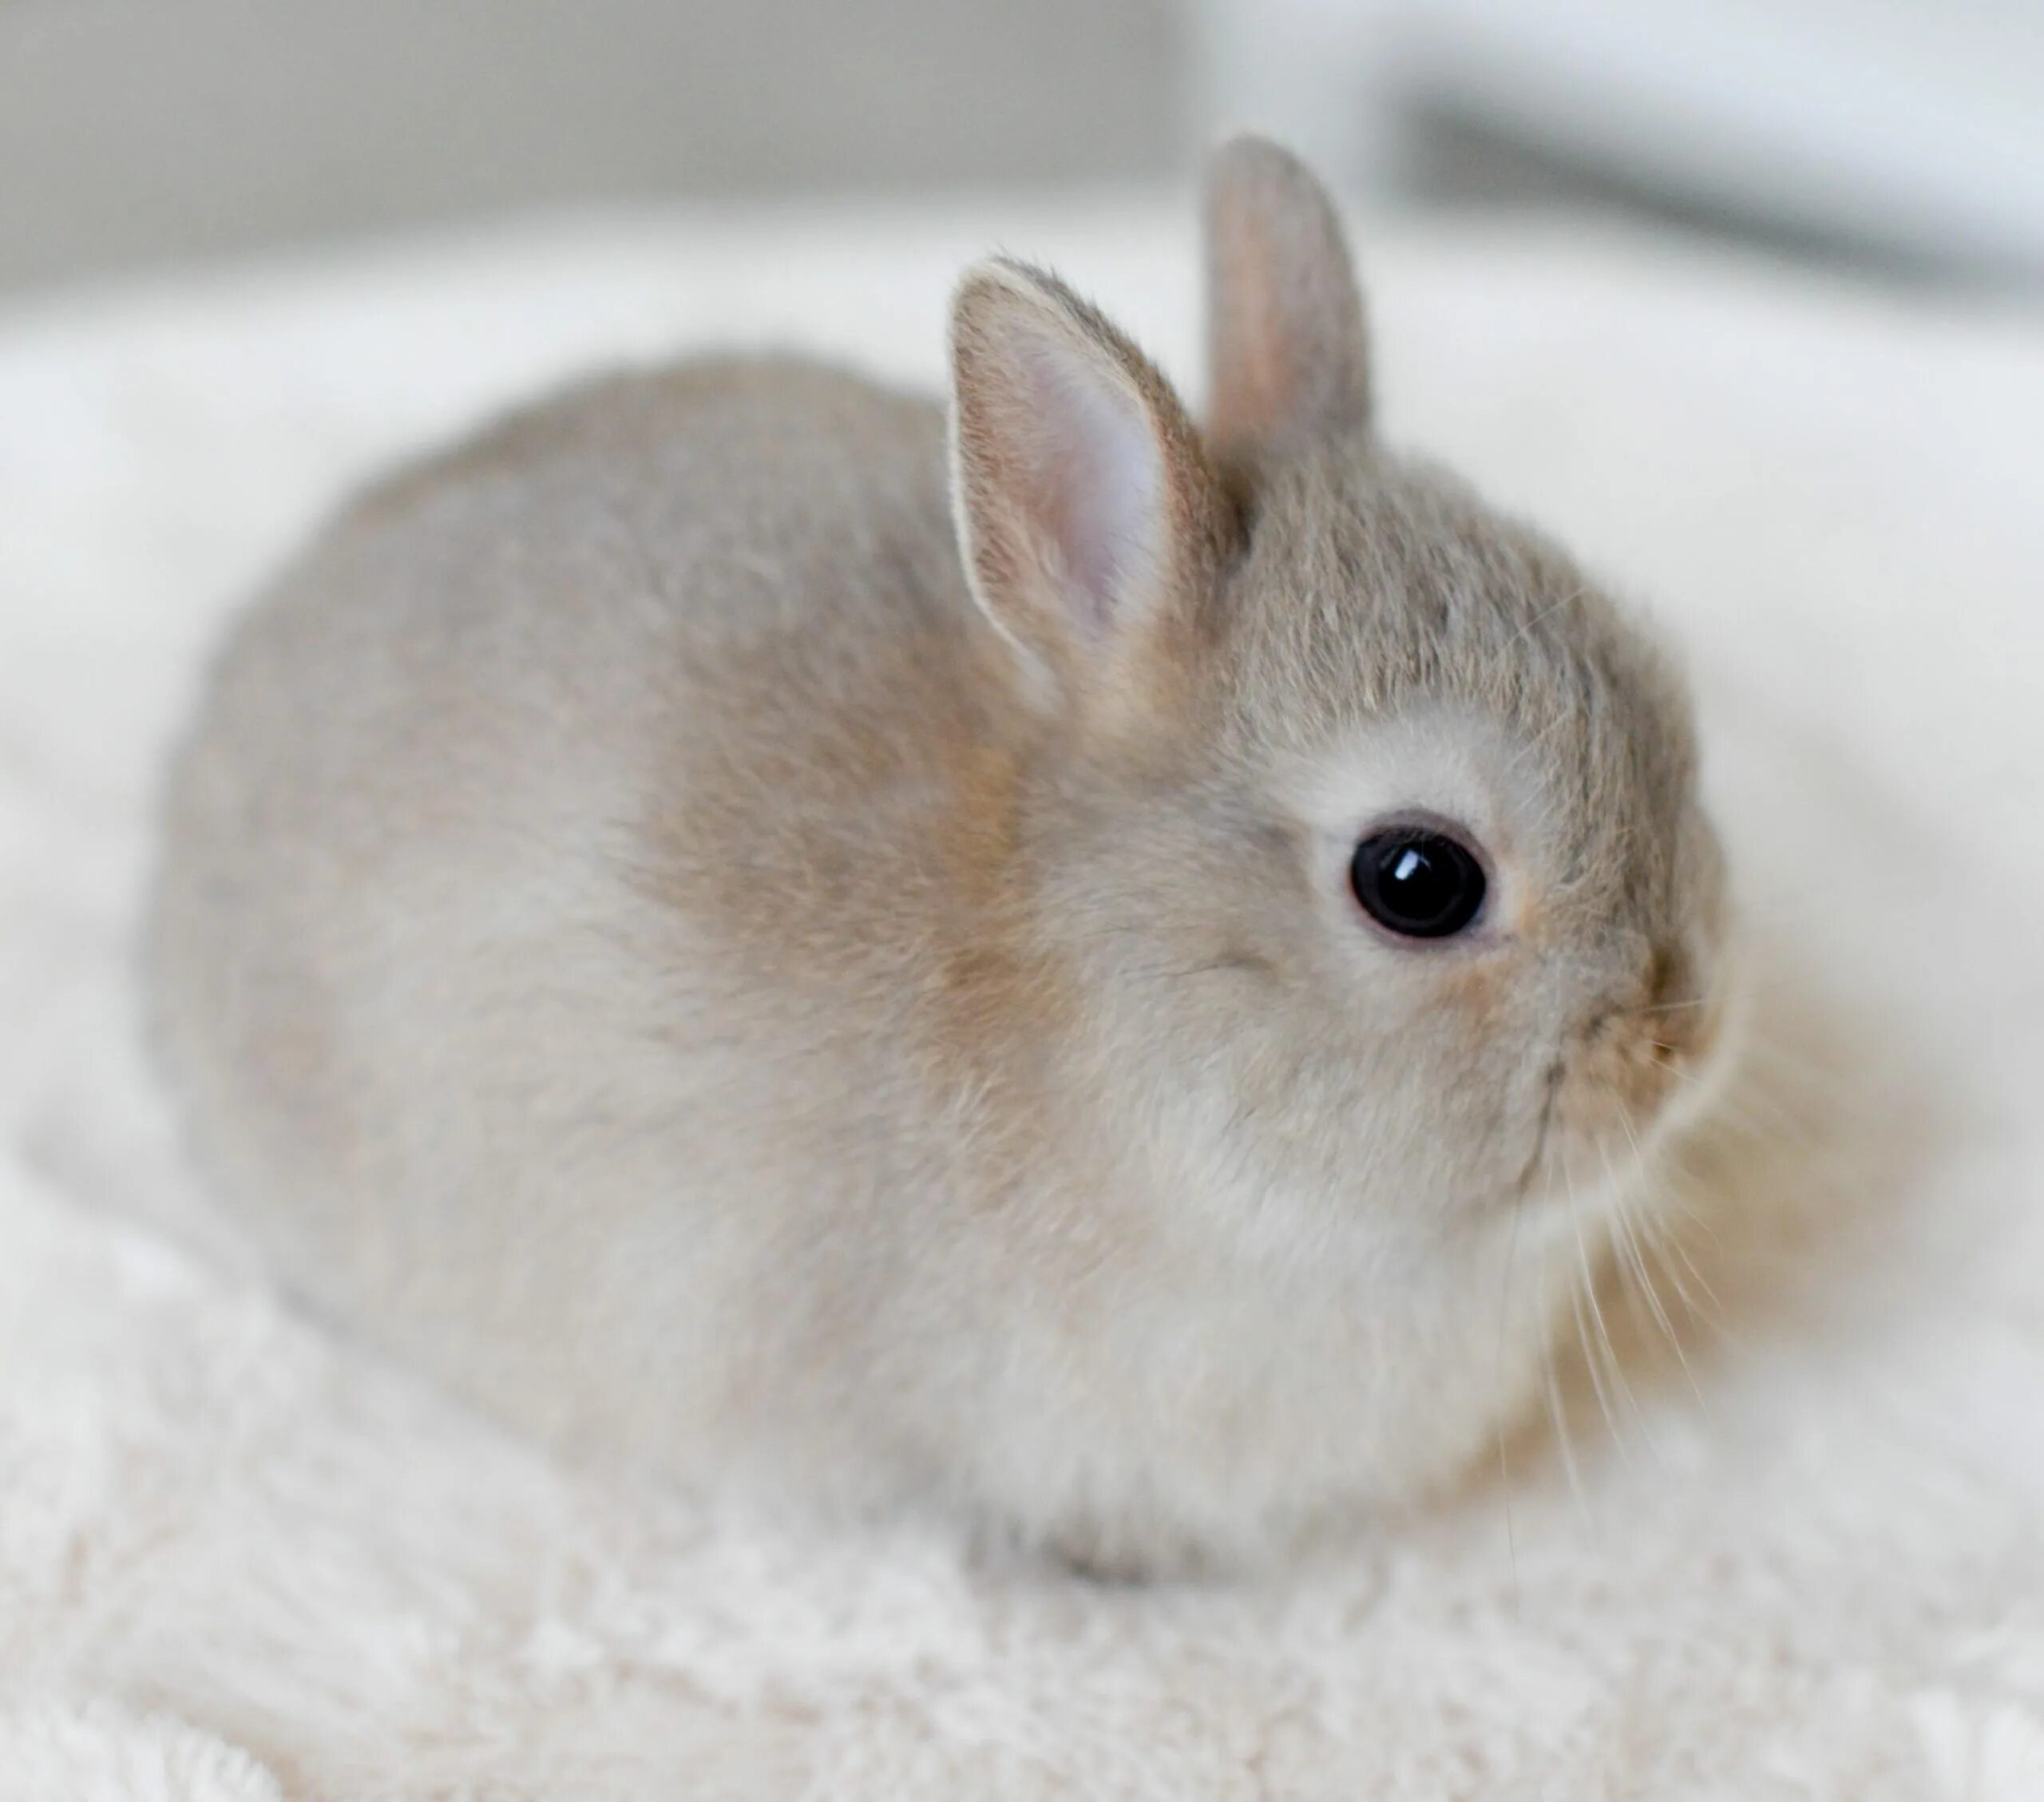 Домашний маленький кролик. Карликовый Русак кролик. Кролик Пигмей белый. Кролики декоративные Карликовые Банни. Карликовый кролик Пигмей белый.